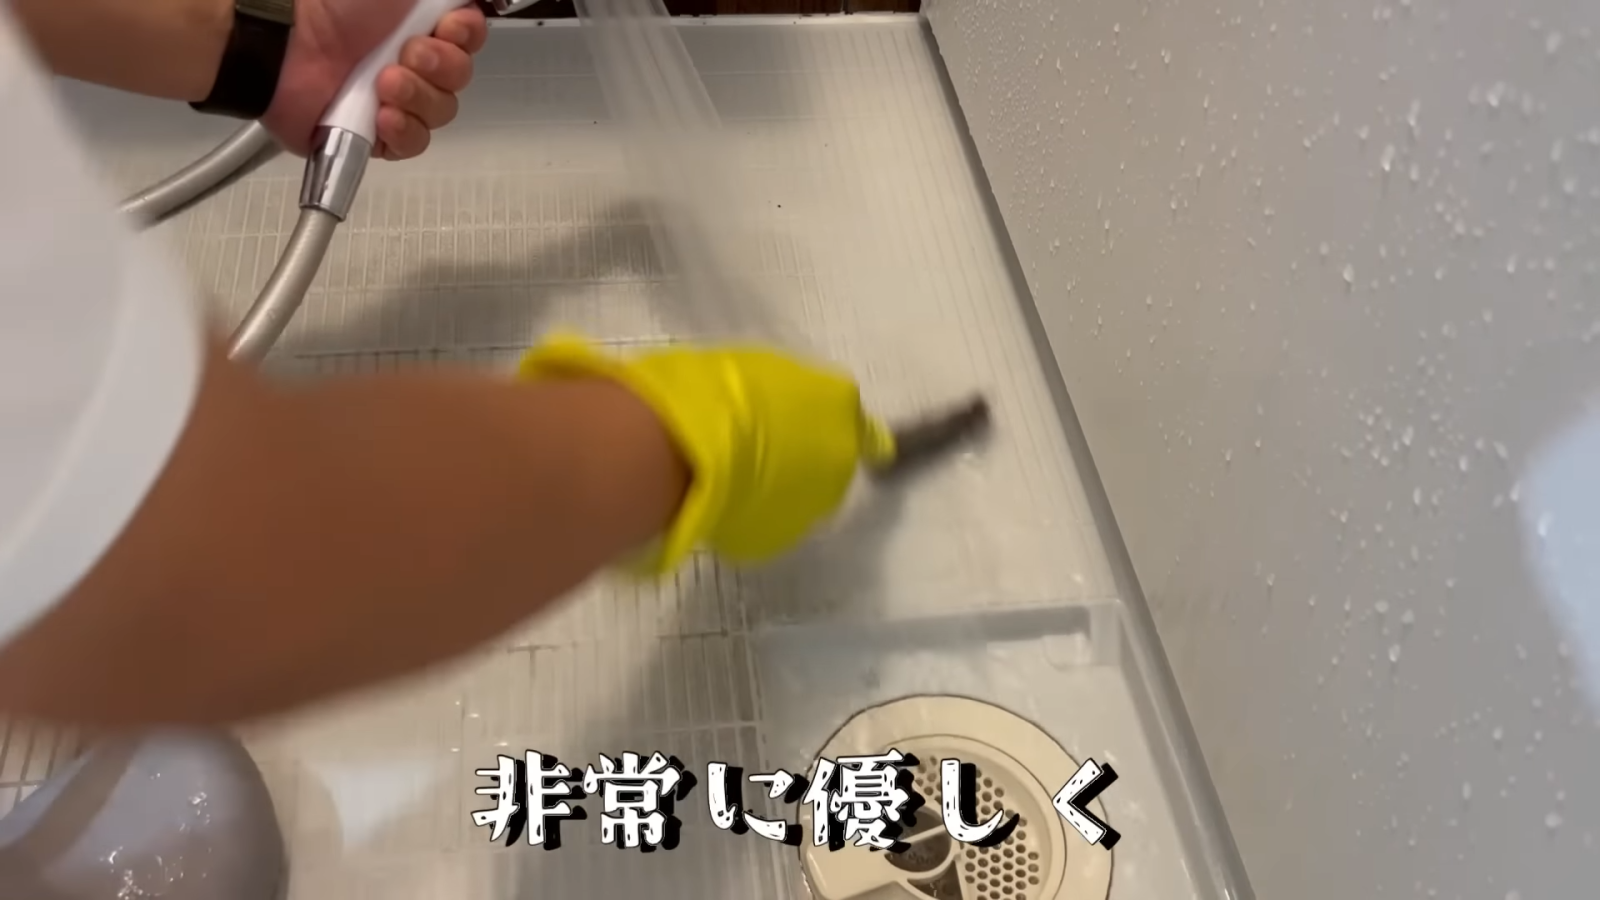 ステンレス製のチャンネルブラシでお風呂場の床を掃除する男性